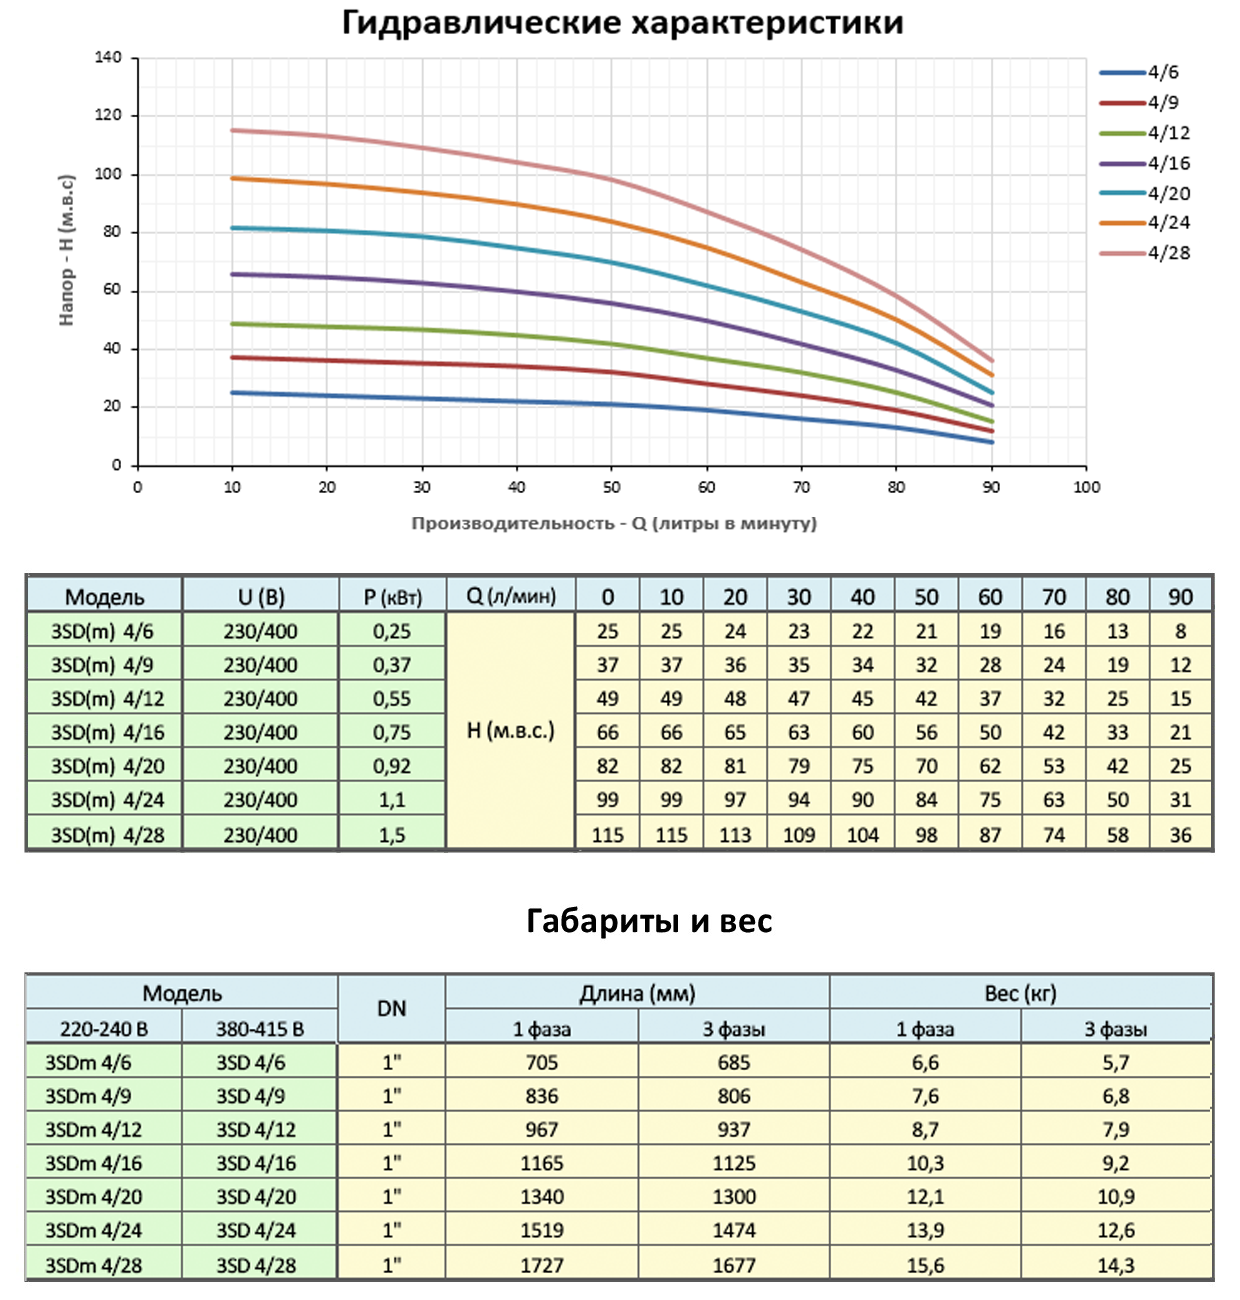 Гидравлические характеристики скважинных насосов DONGYIN 3SD(m) 4/28